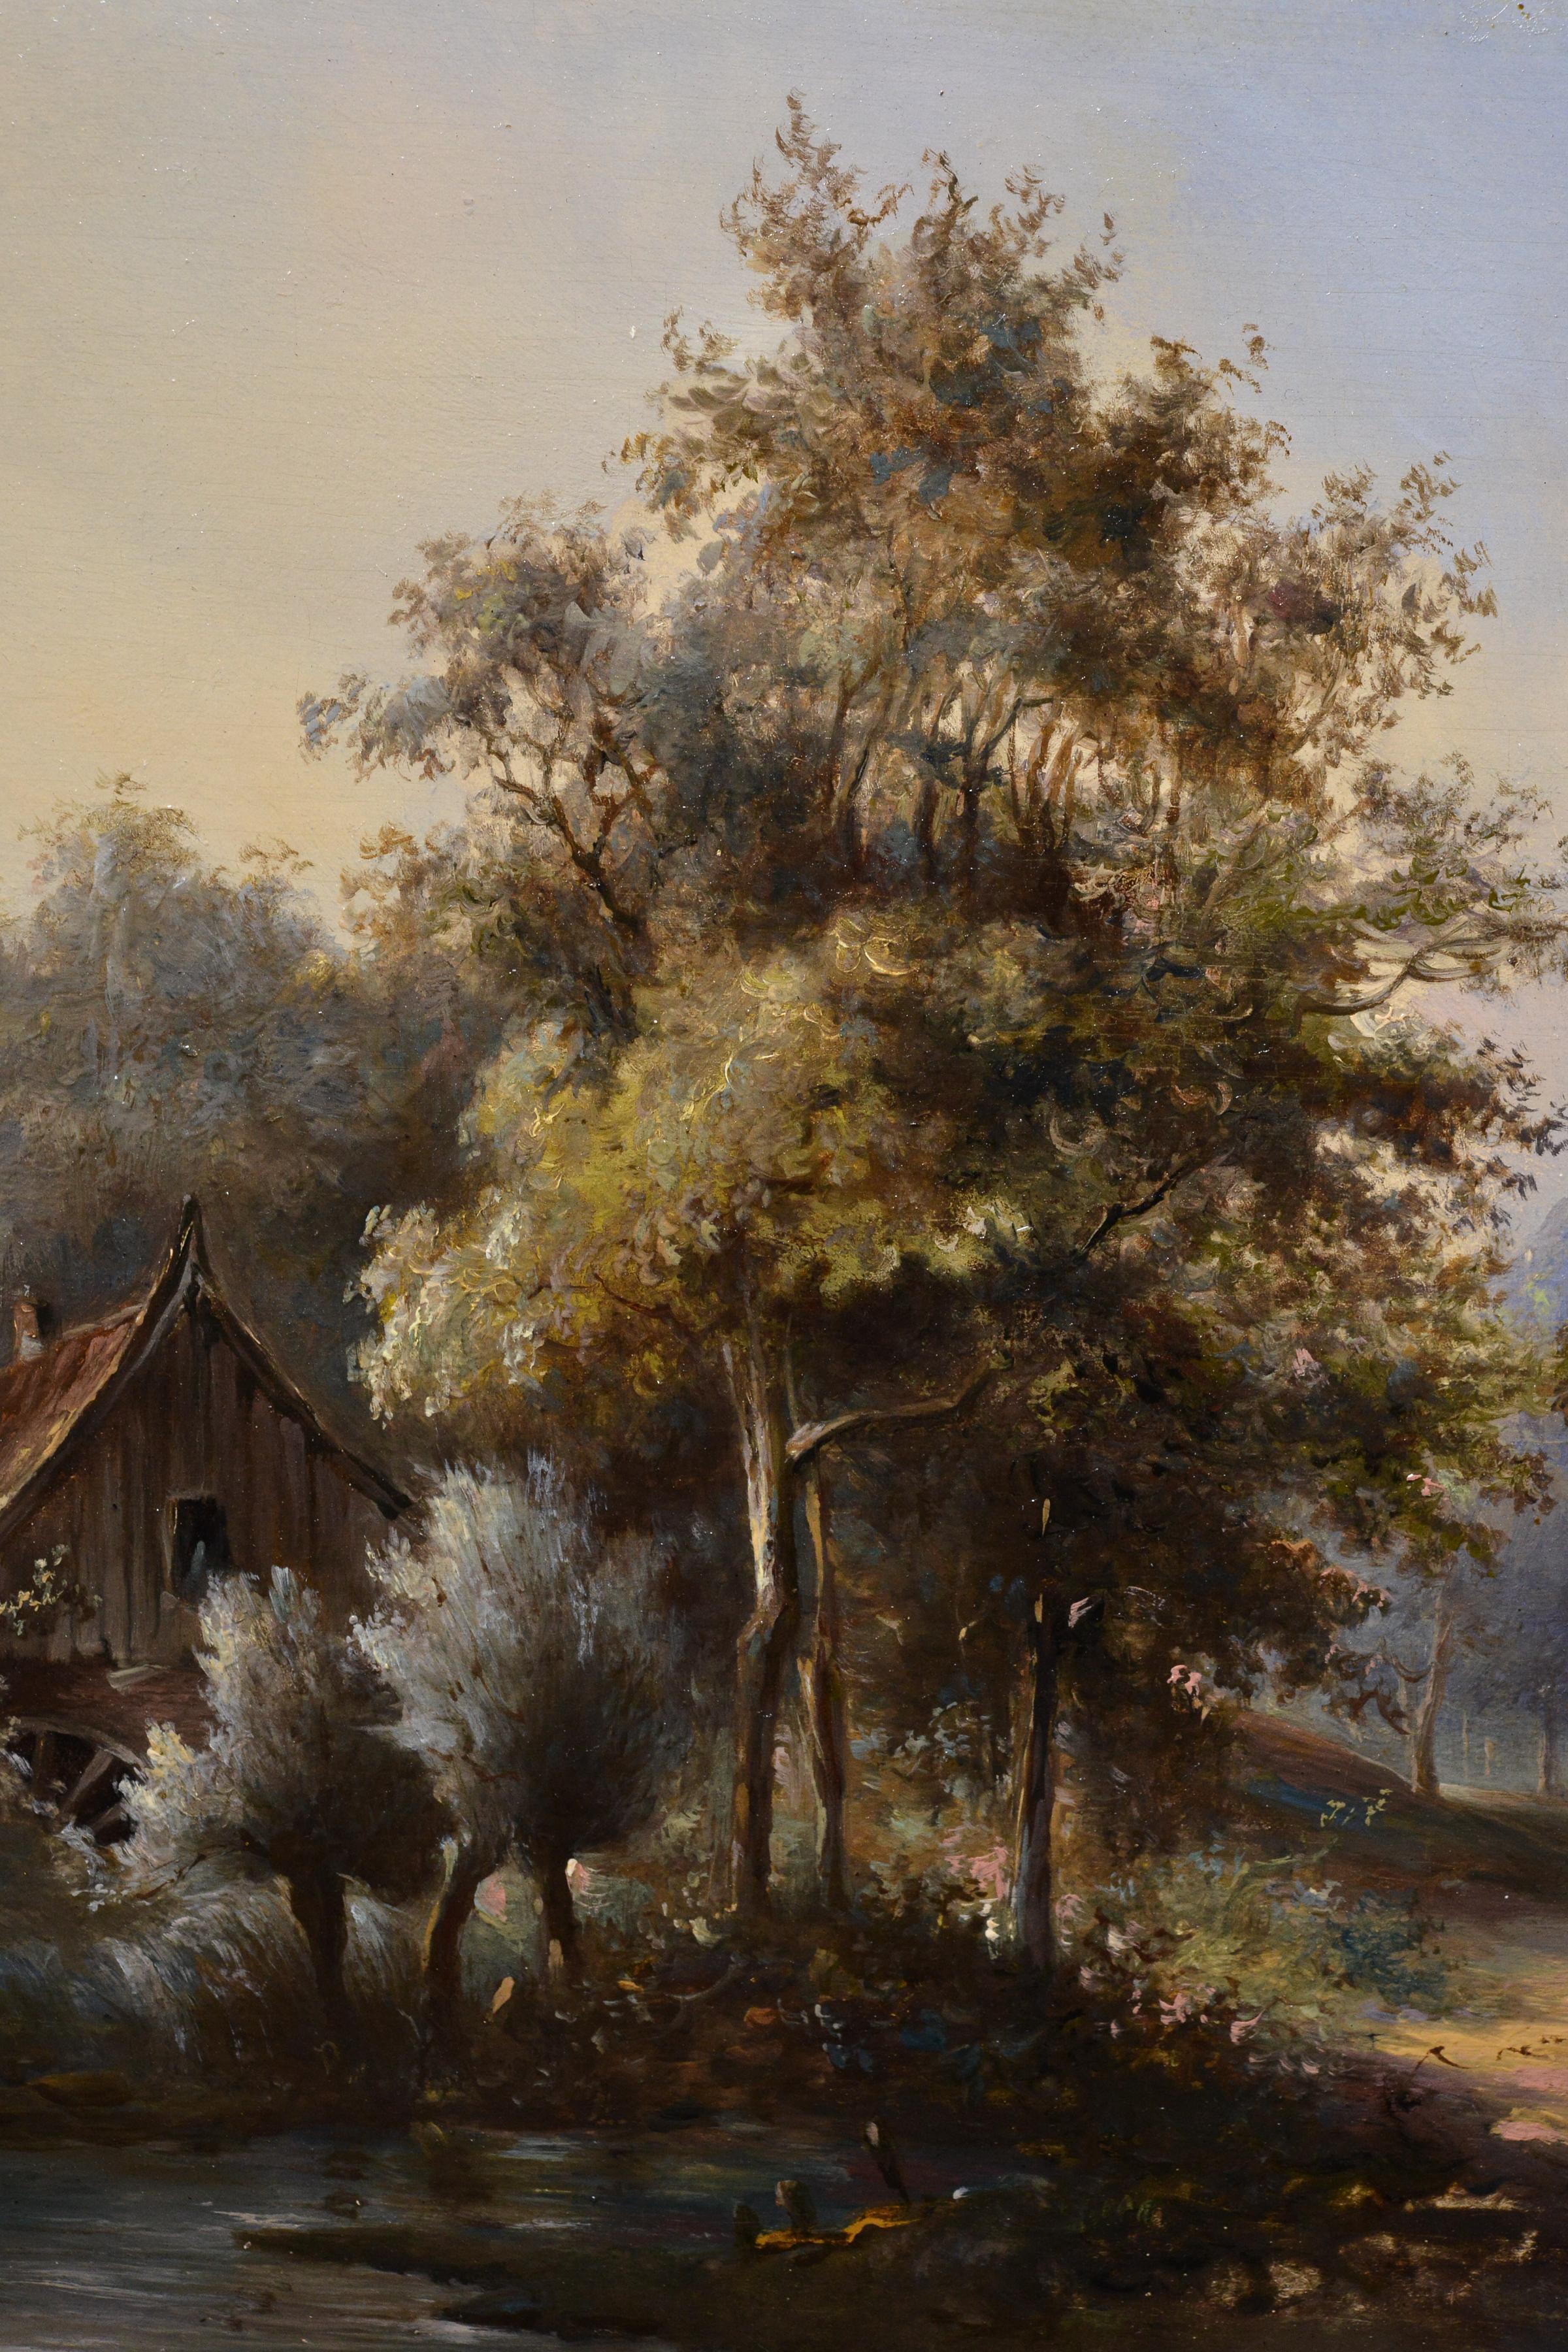 La plaque en laiton conduit à l'artiste russe Pavel Pavlovich Dzhogin (1834 - 1885). Cette peinture à l'huile du XIXe siècle capture magnifiquement une scène rurale sereine avec des voyageurs sur une charrette voyageant le long d'une route